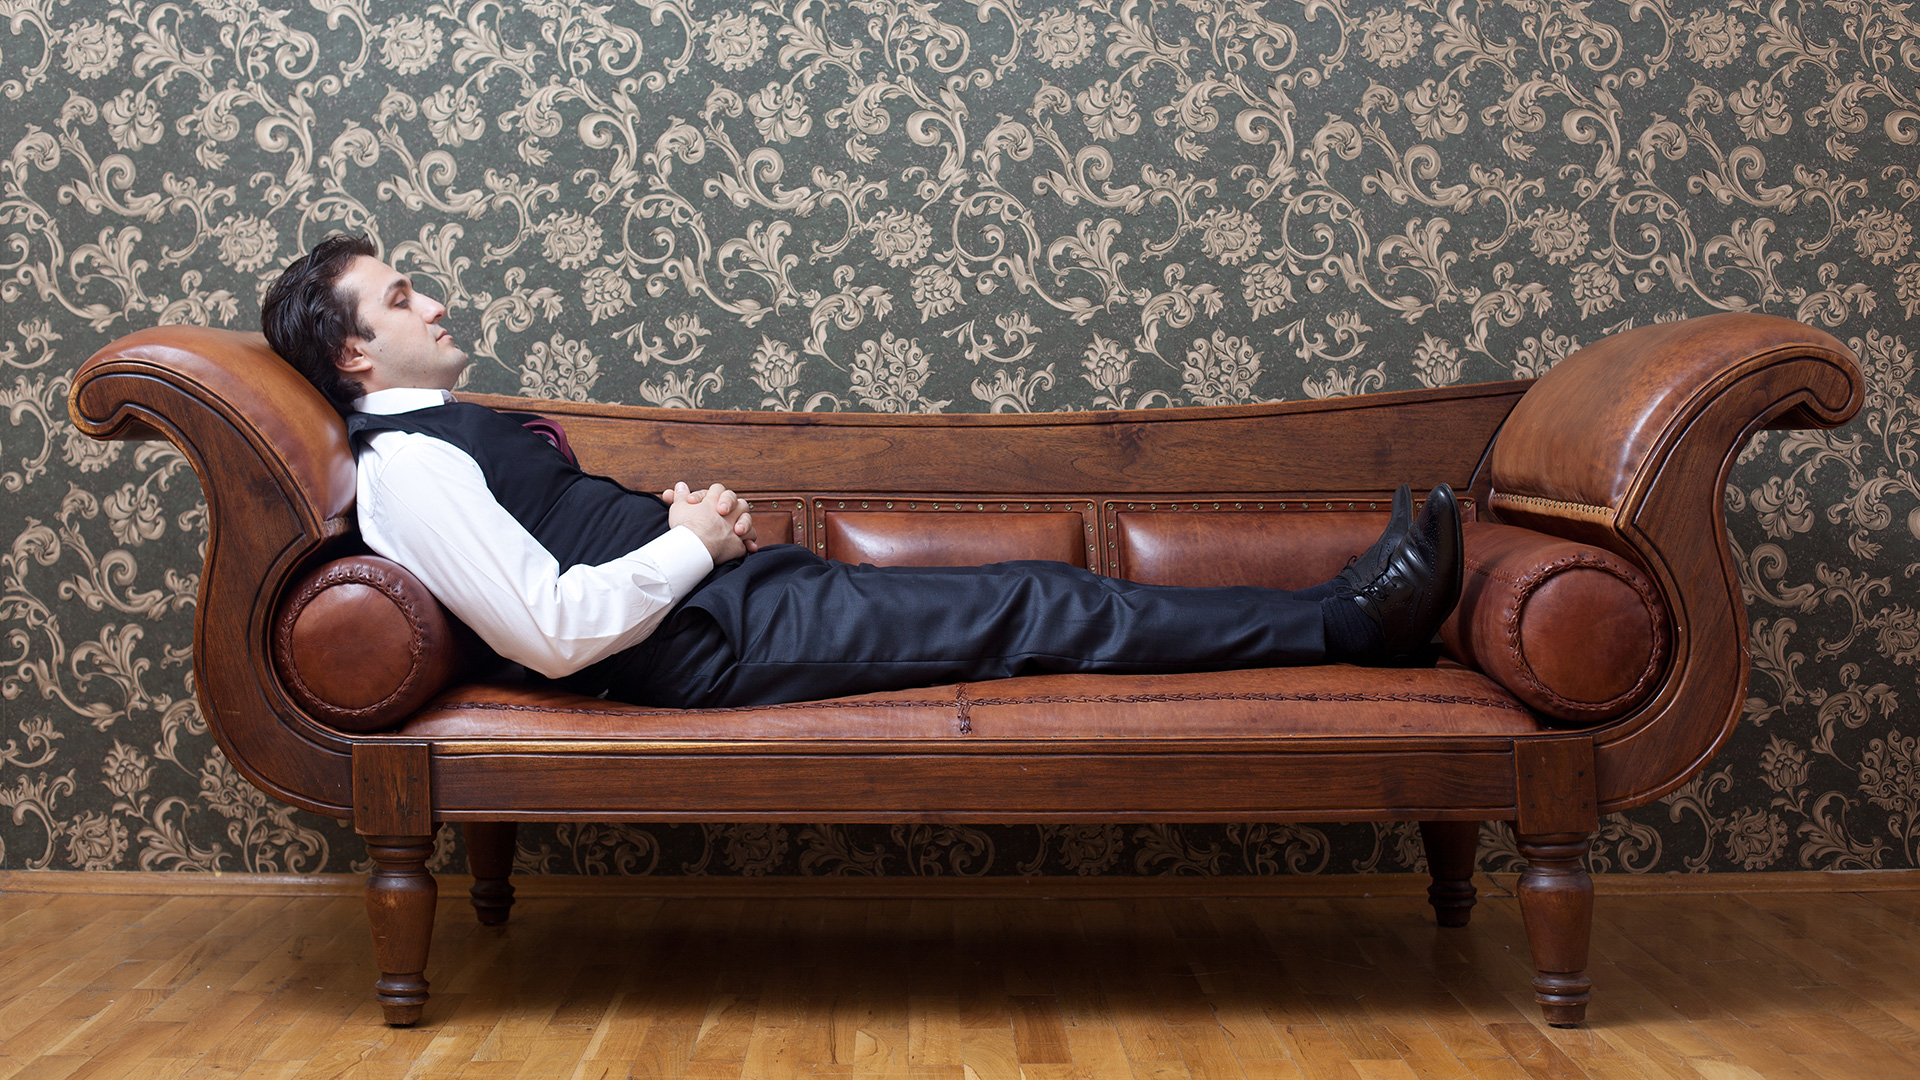 El diván es una de las ideas más frecuentemente asociadas al psicoanálisis (Getty Images)